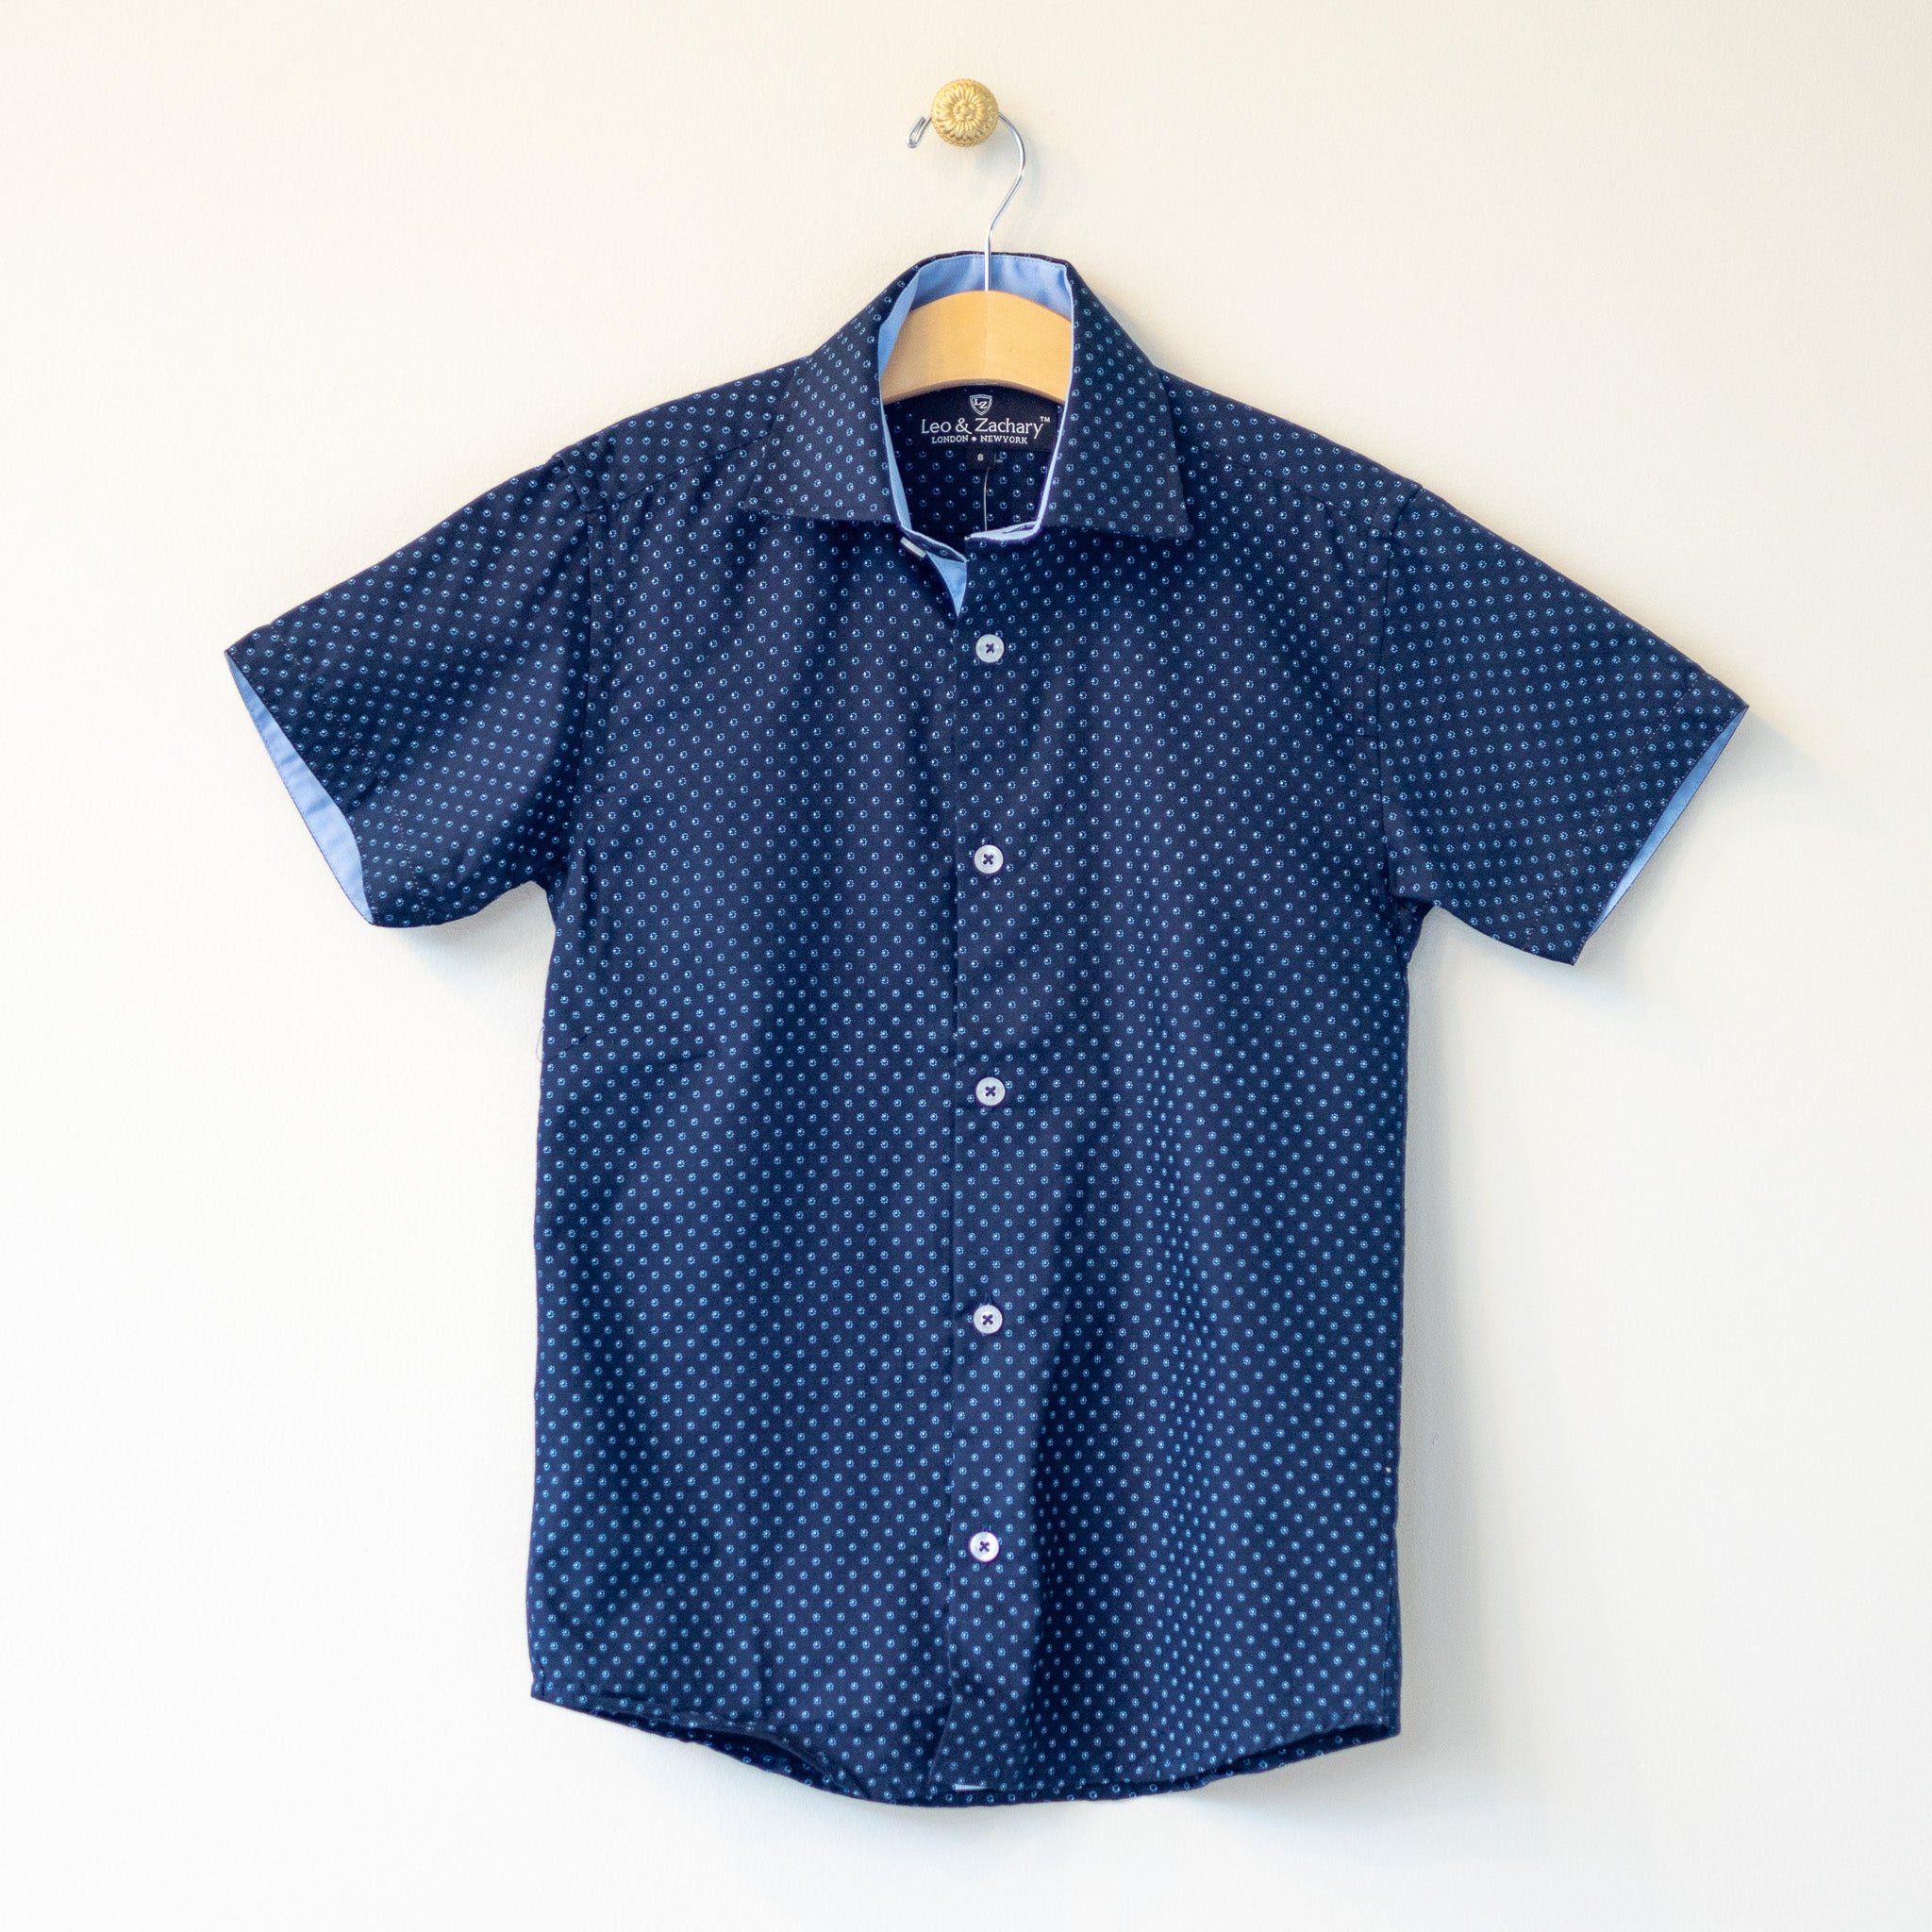 Navy/Lt. Blue Dot S/S Dress Shirt